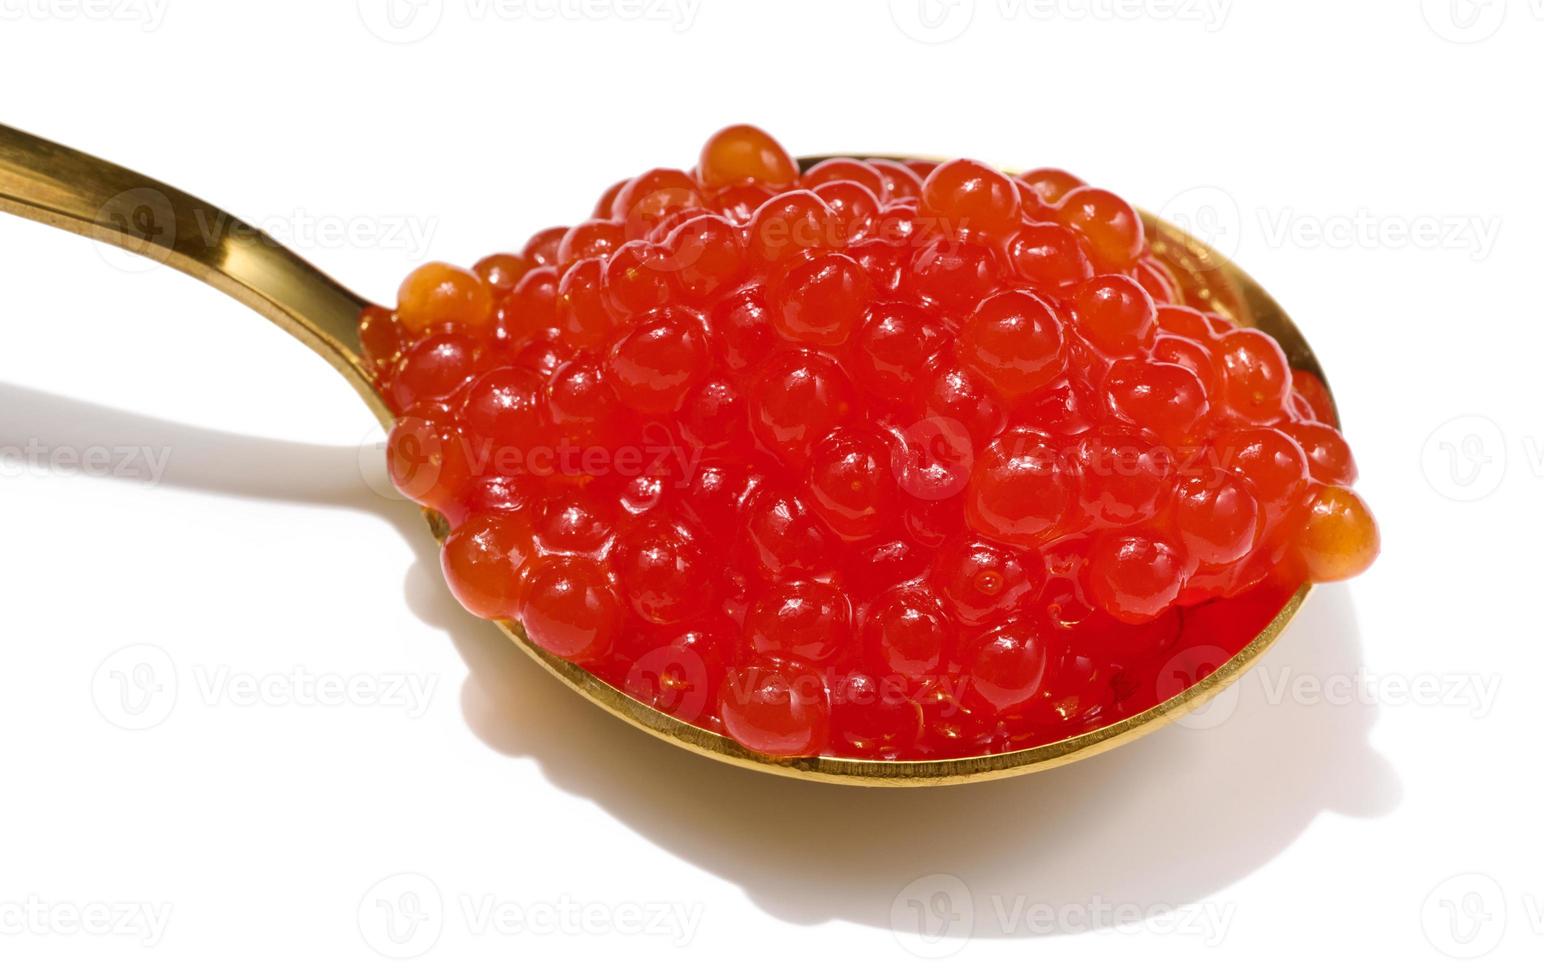 röd stör kaviar i en metall sked på en vit isolerat bakgrund, utsökt mellanmål foto